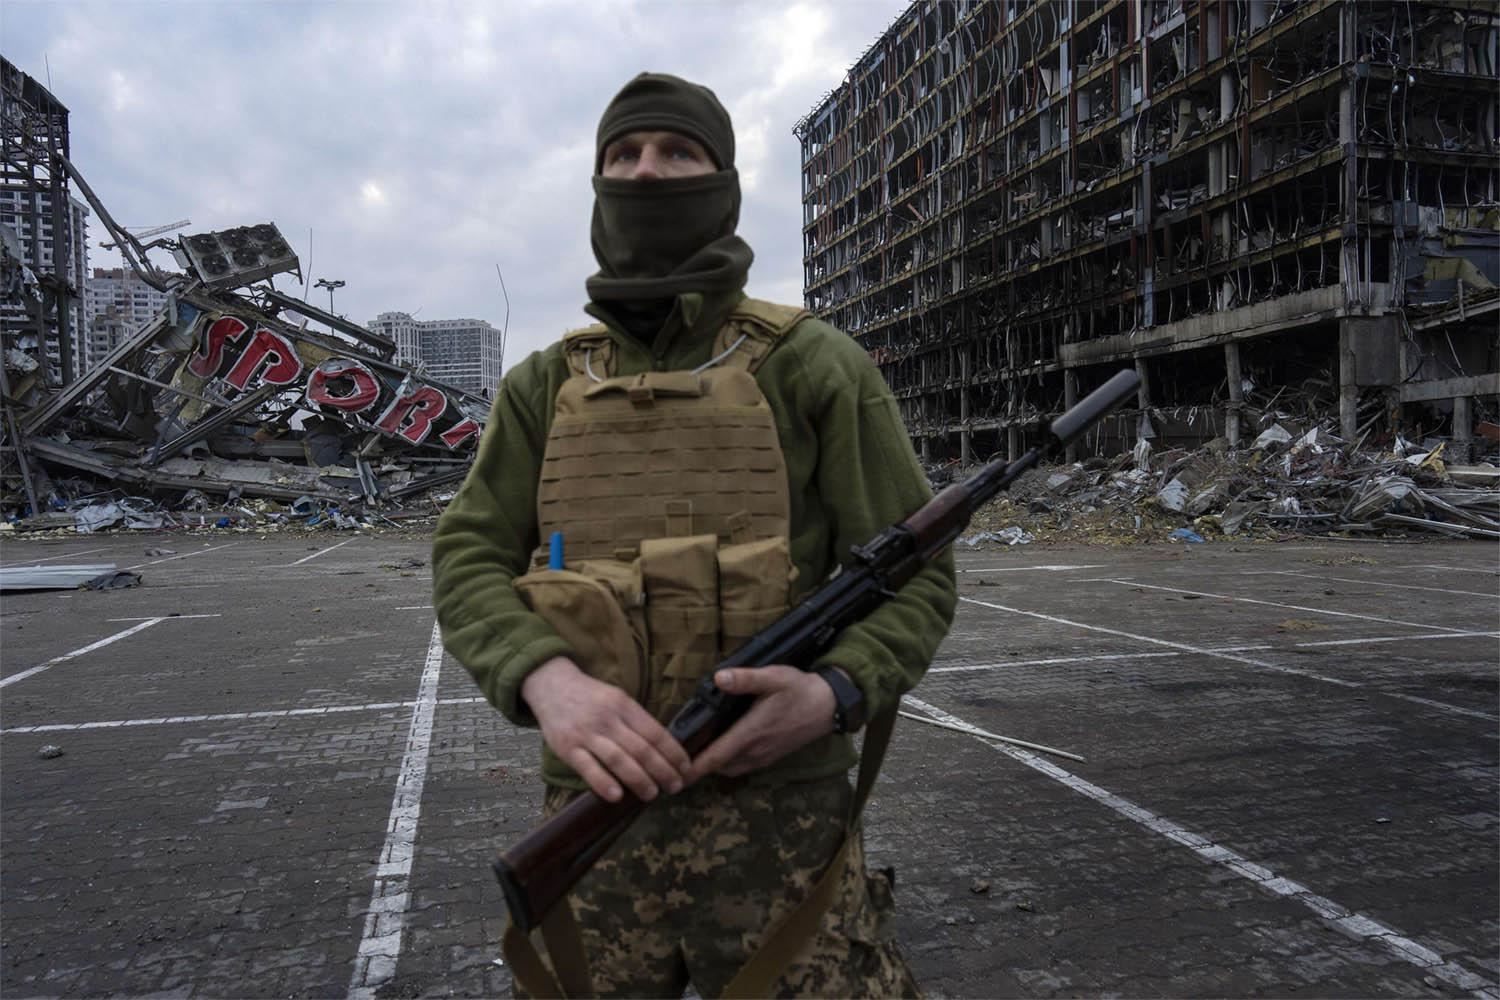 كيف يُعقّد المقاتلون الأجانب الحرب في أوكرانيا؟ وما علاقة "تيك توك"؟

